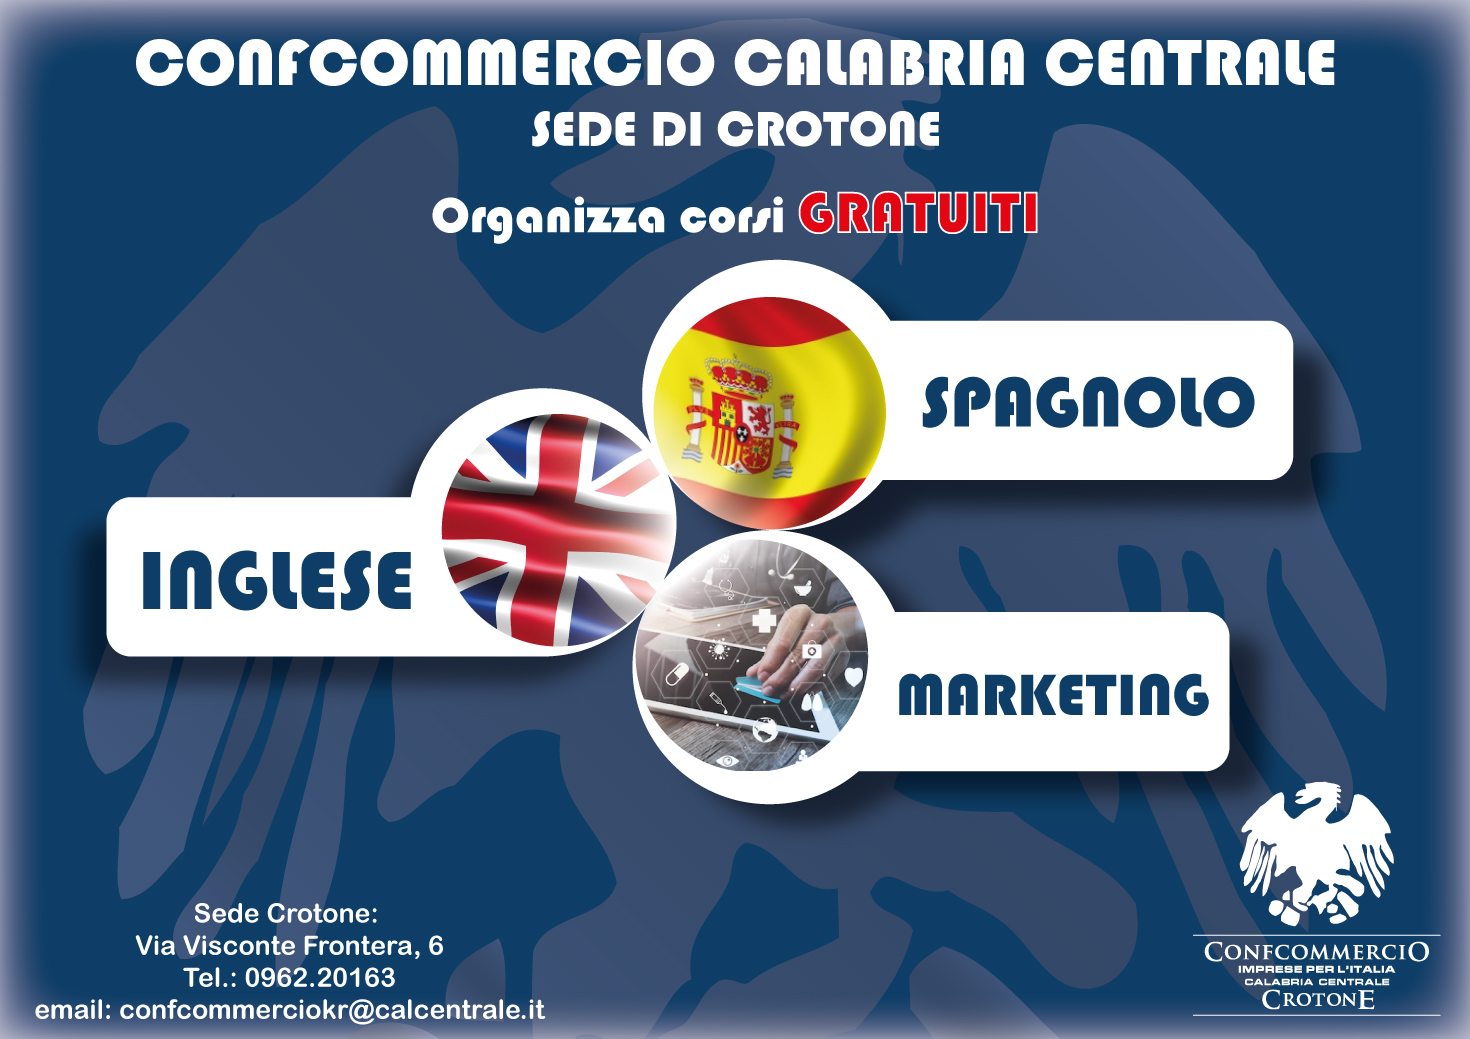 Corsi Gratuiti Di Inglese Spagnolo E Marketing A Crotone Confcommercio Calabria Centrale